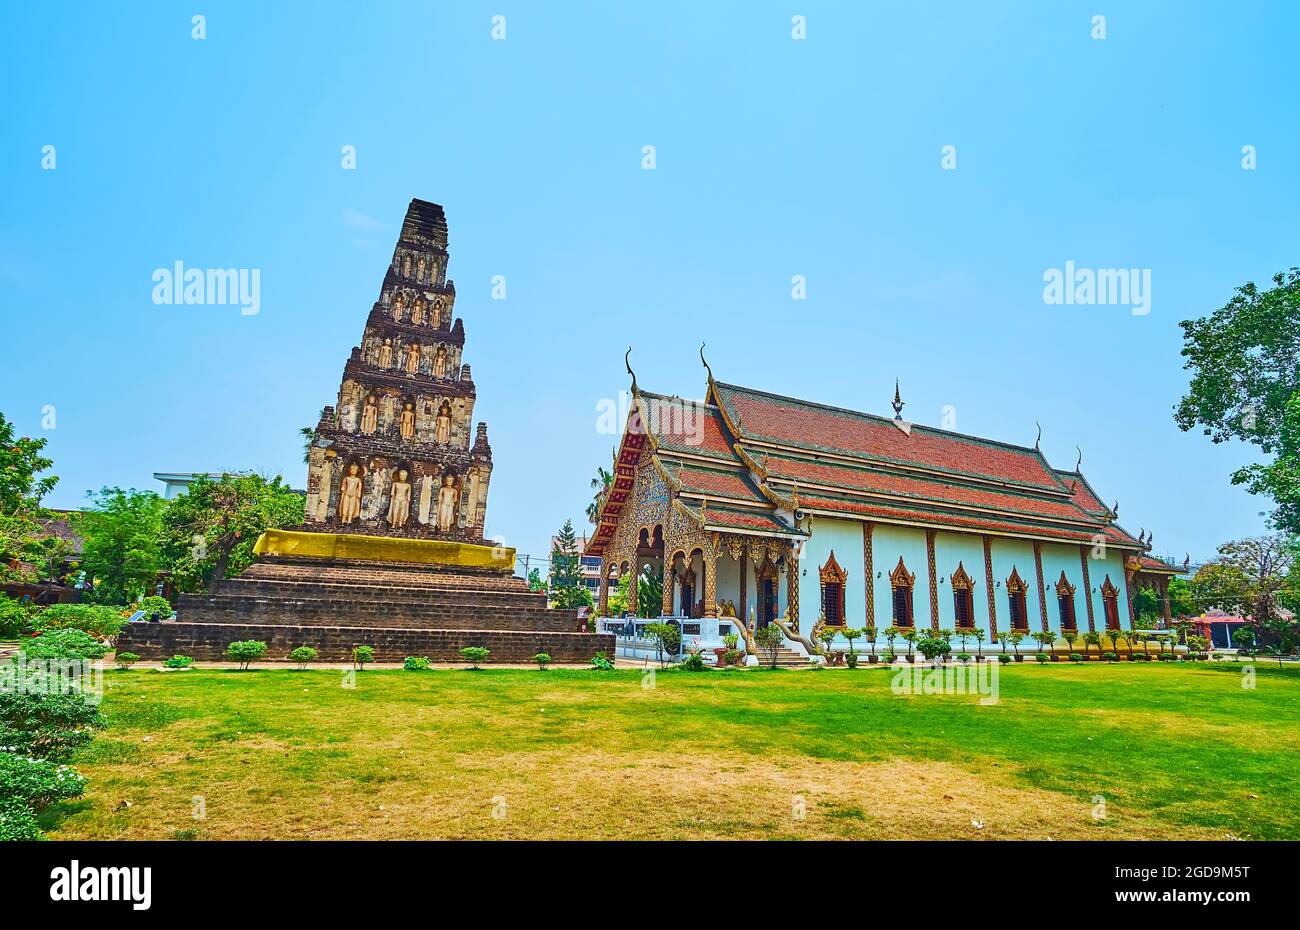 La scenografica Sala Viharn del Tempio di Wat Chammathewi con tetto a timpano, decorazioni intagliate ornate e la stupa Suwan Chedi Jungkote accanto ad esso, Lamphun, Th Foto Stock